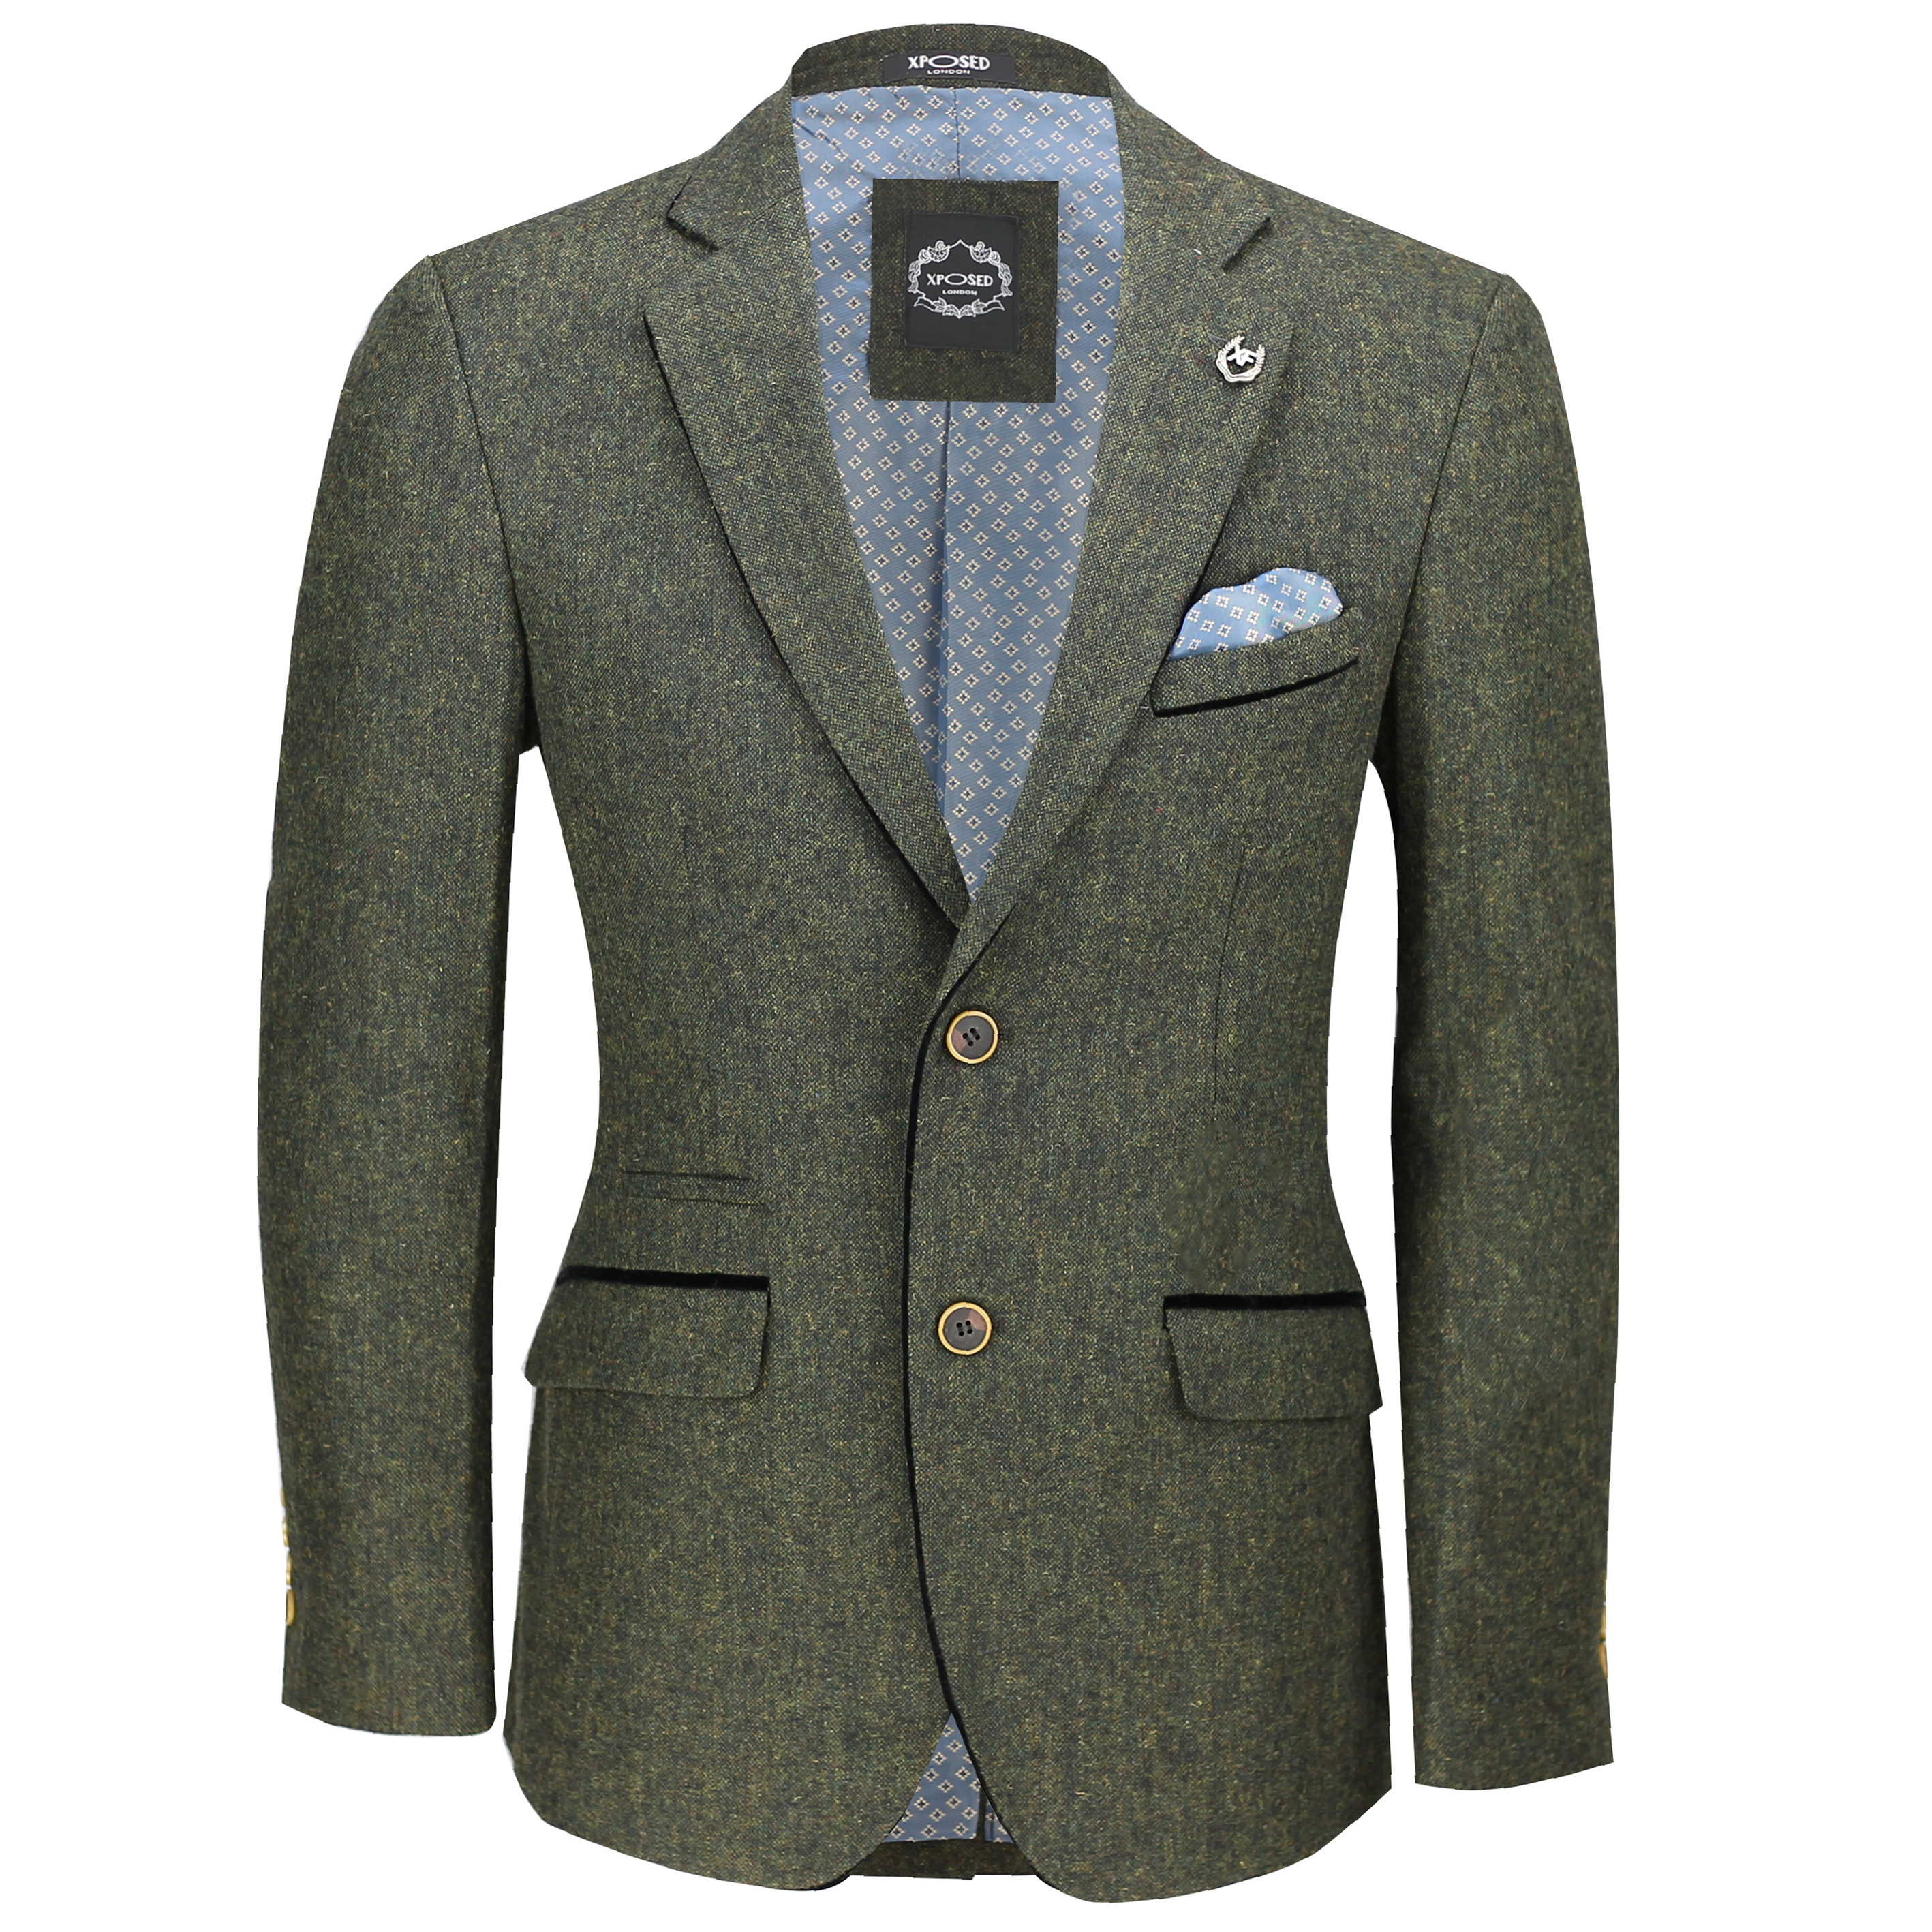 Mens Vintage Tweed Blazer in Tan Green Blue Designer Formal Slim ...